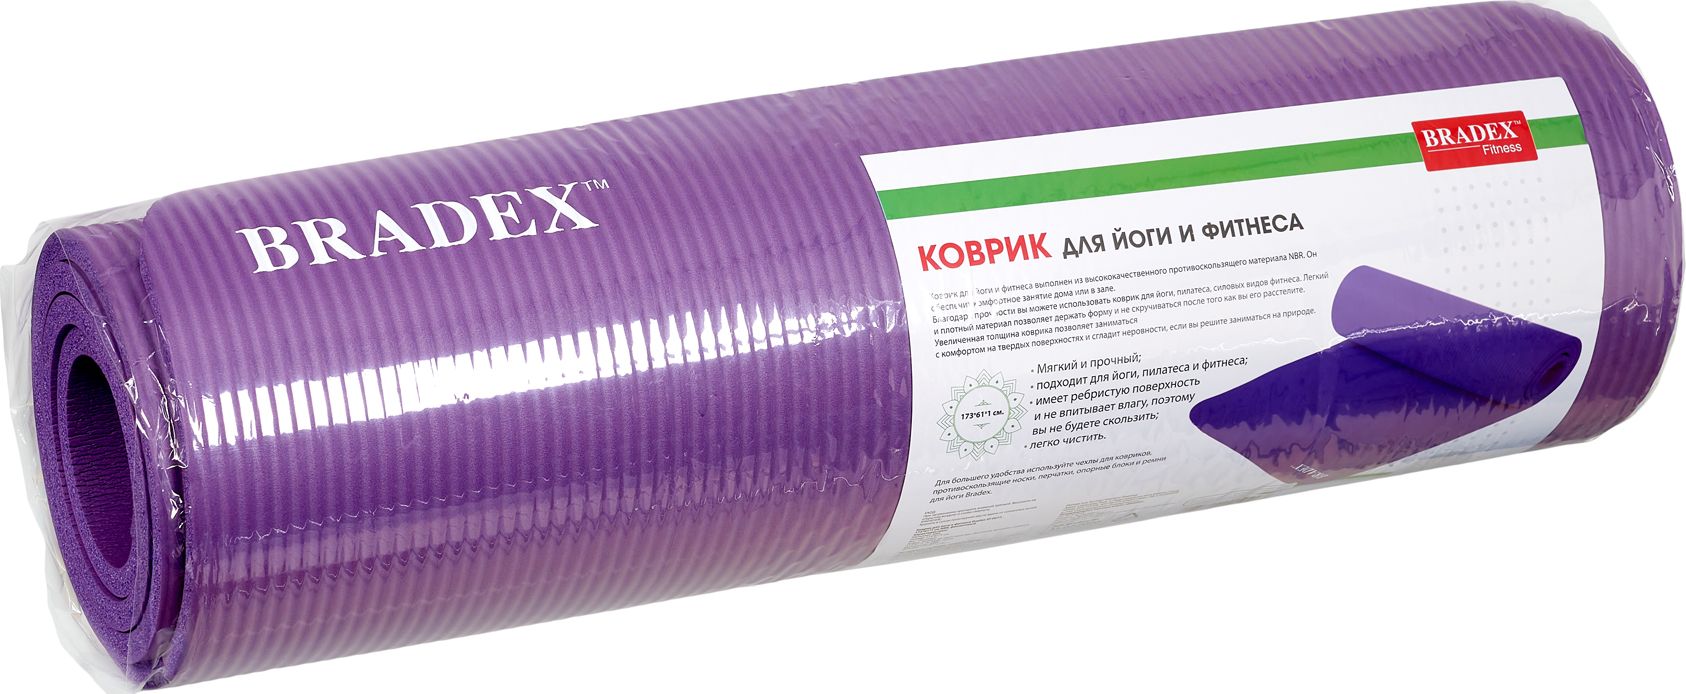 Коврик для йоги и фитнеса Bradex, 173*61*1 см NBR, фиолетовый